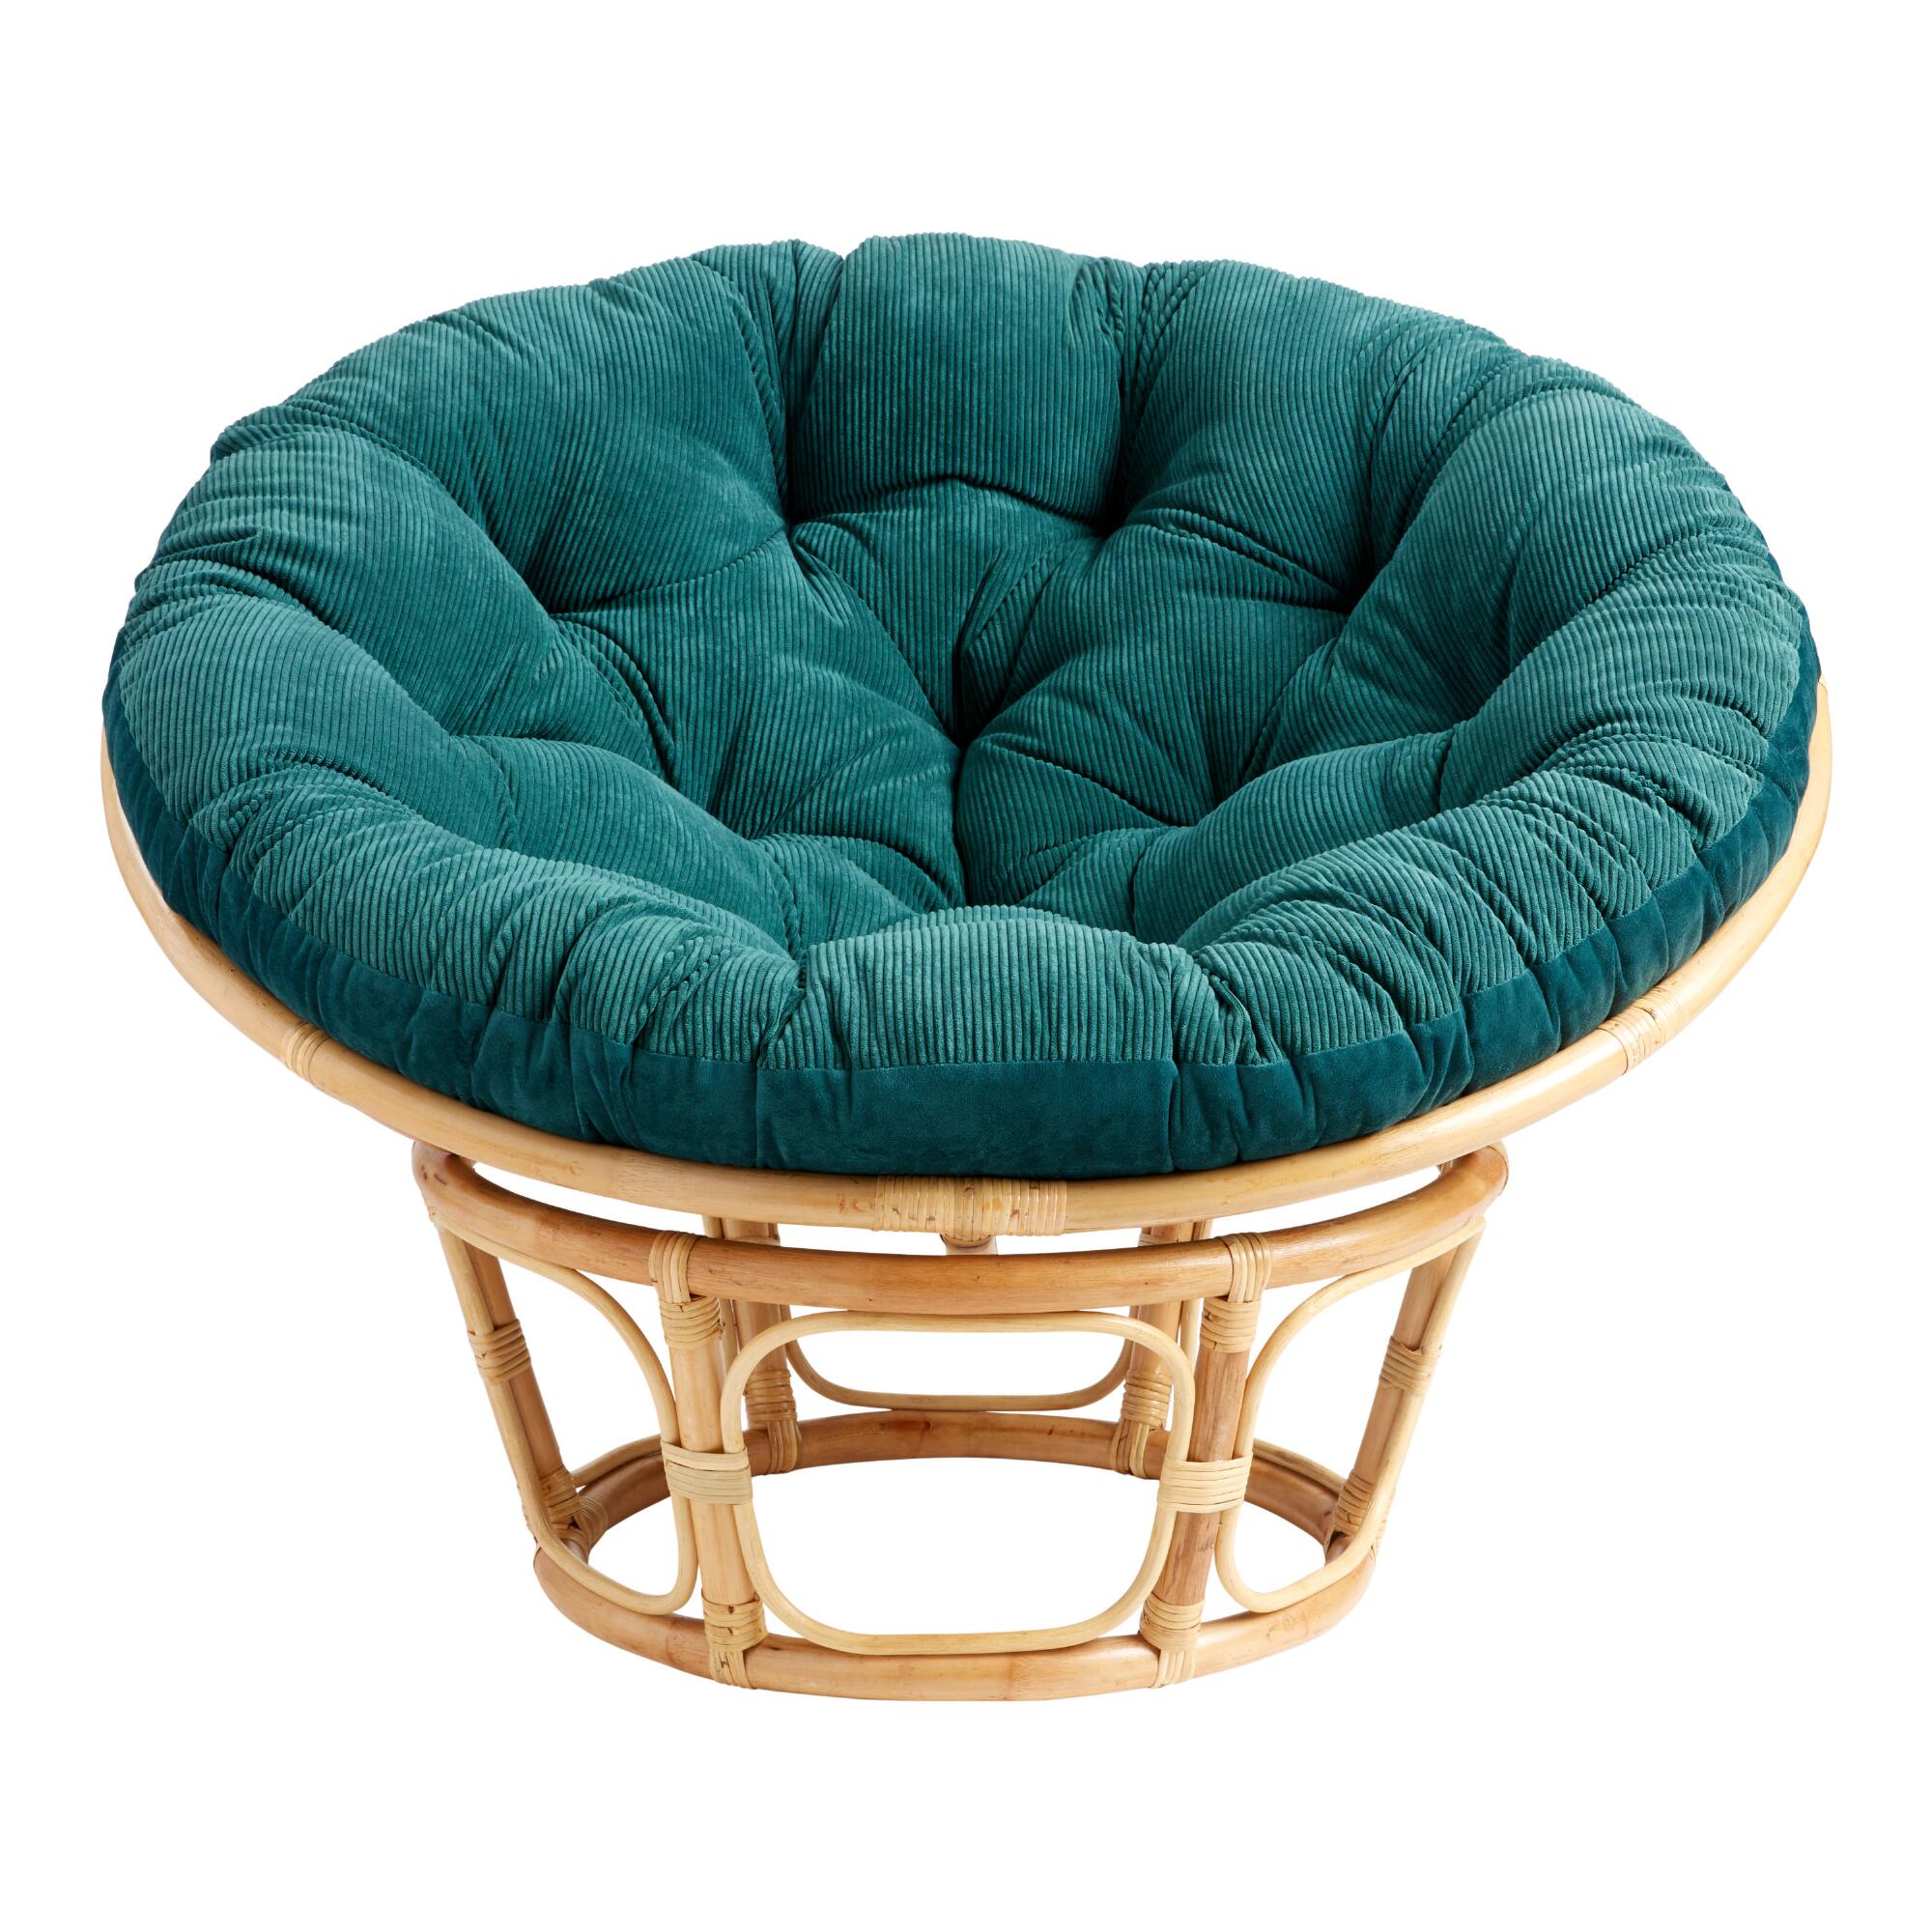 Dark Green Velvet Corduroy Papasan Cushion - Cotton - 58" Round by World Market